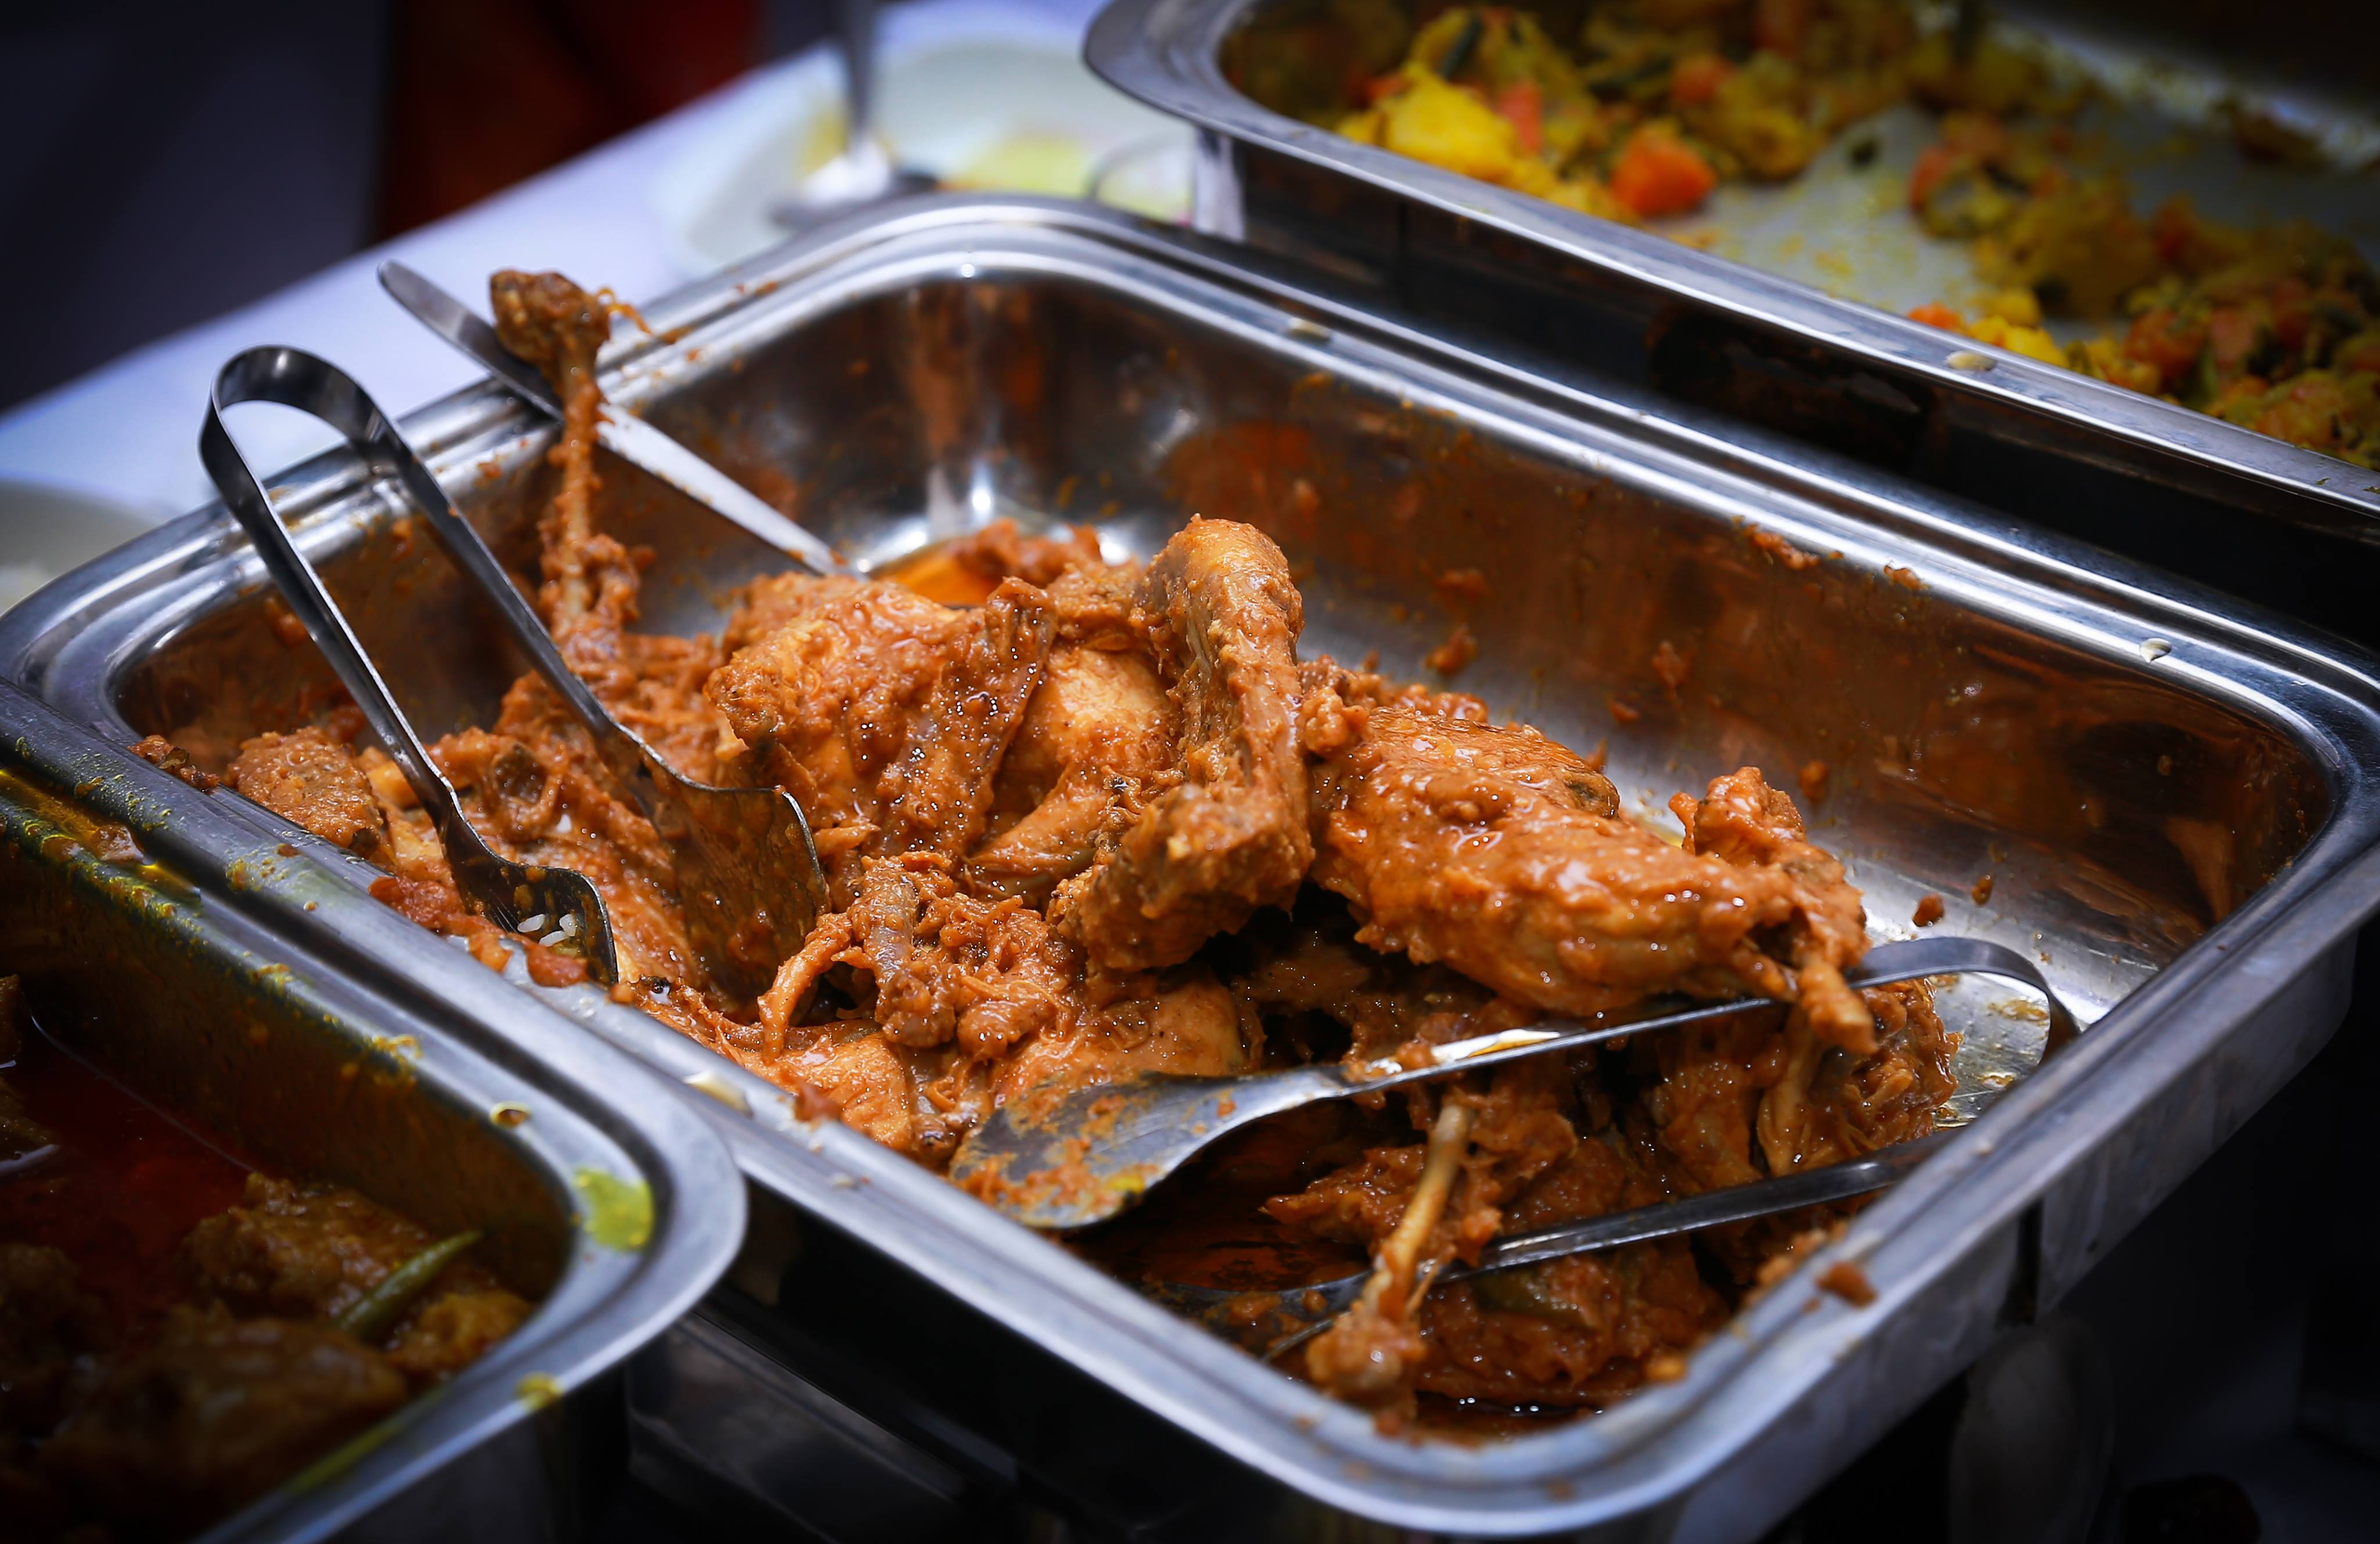 الّدّجاج الْمشويّ هو من الأطباق المحبّذة الْأخرى في أعراس الْبنغلادشيّين.